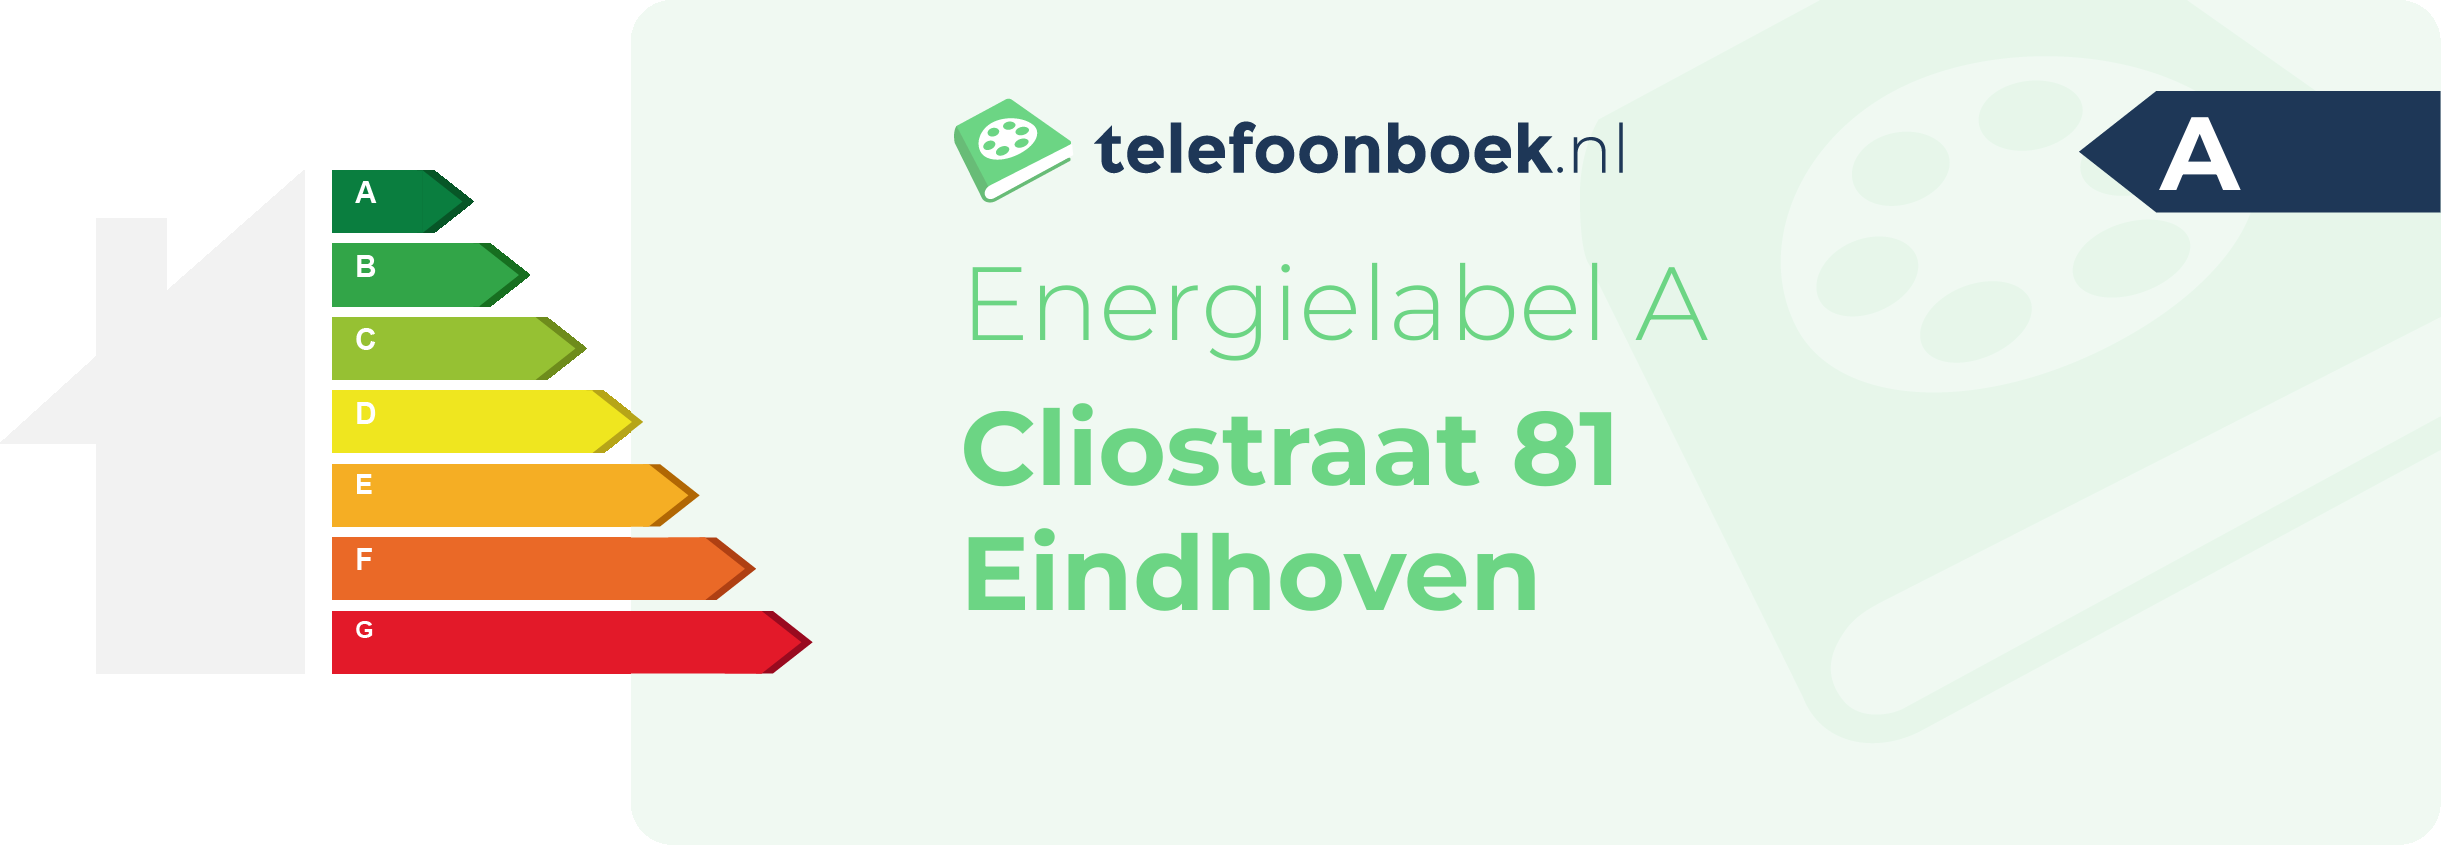 Energielabel Cliostraat 81 Eindhoven